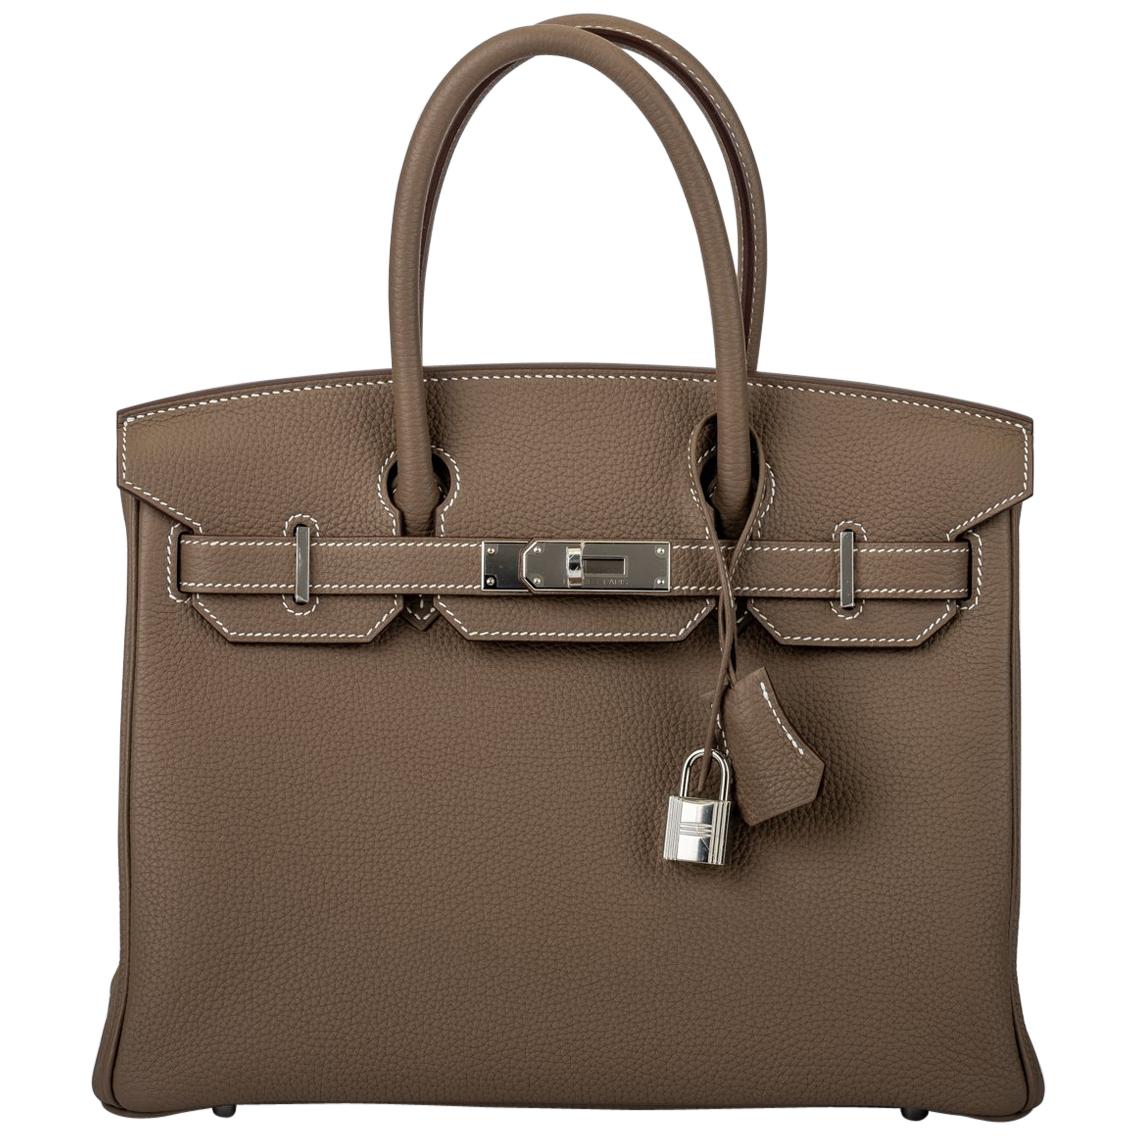 New in Box Hermes Birkin 30cm Etoupe Togo Bag